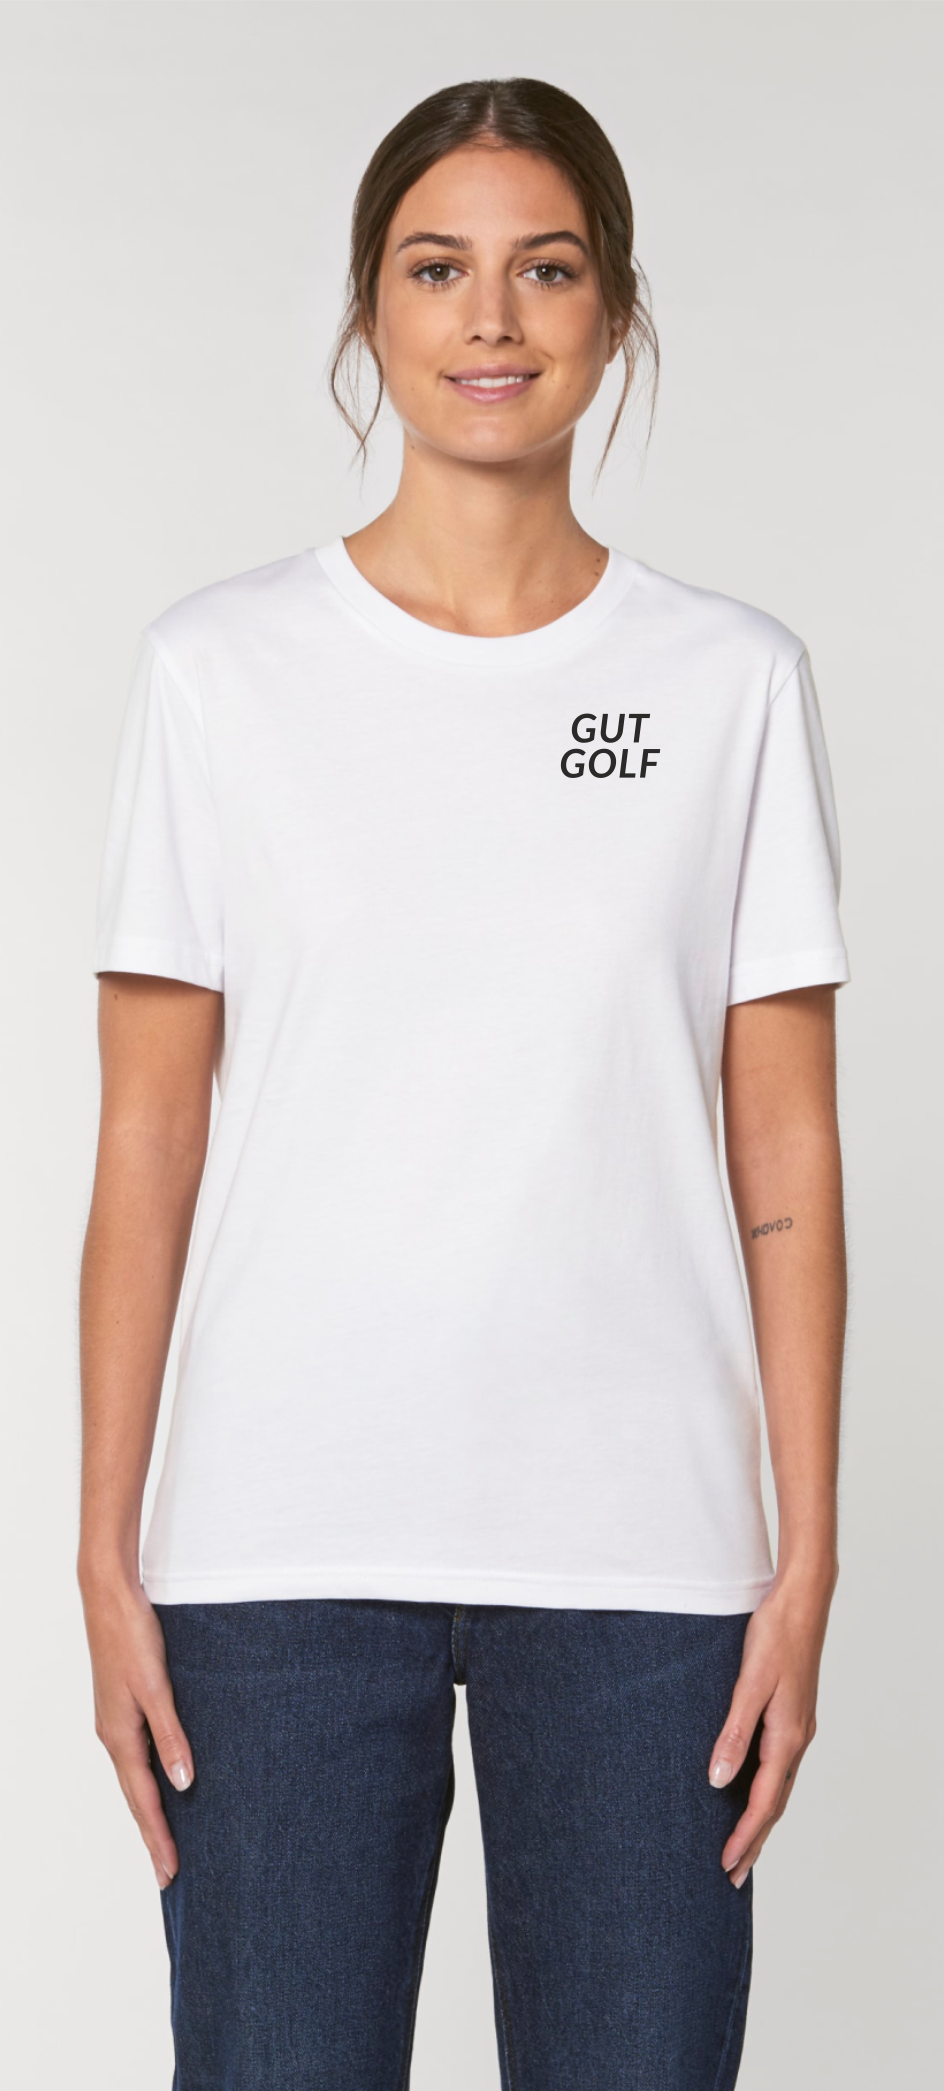 Gut Golf_ T-Shirt unisex